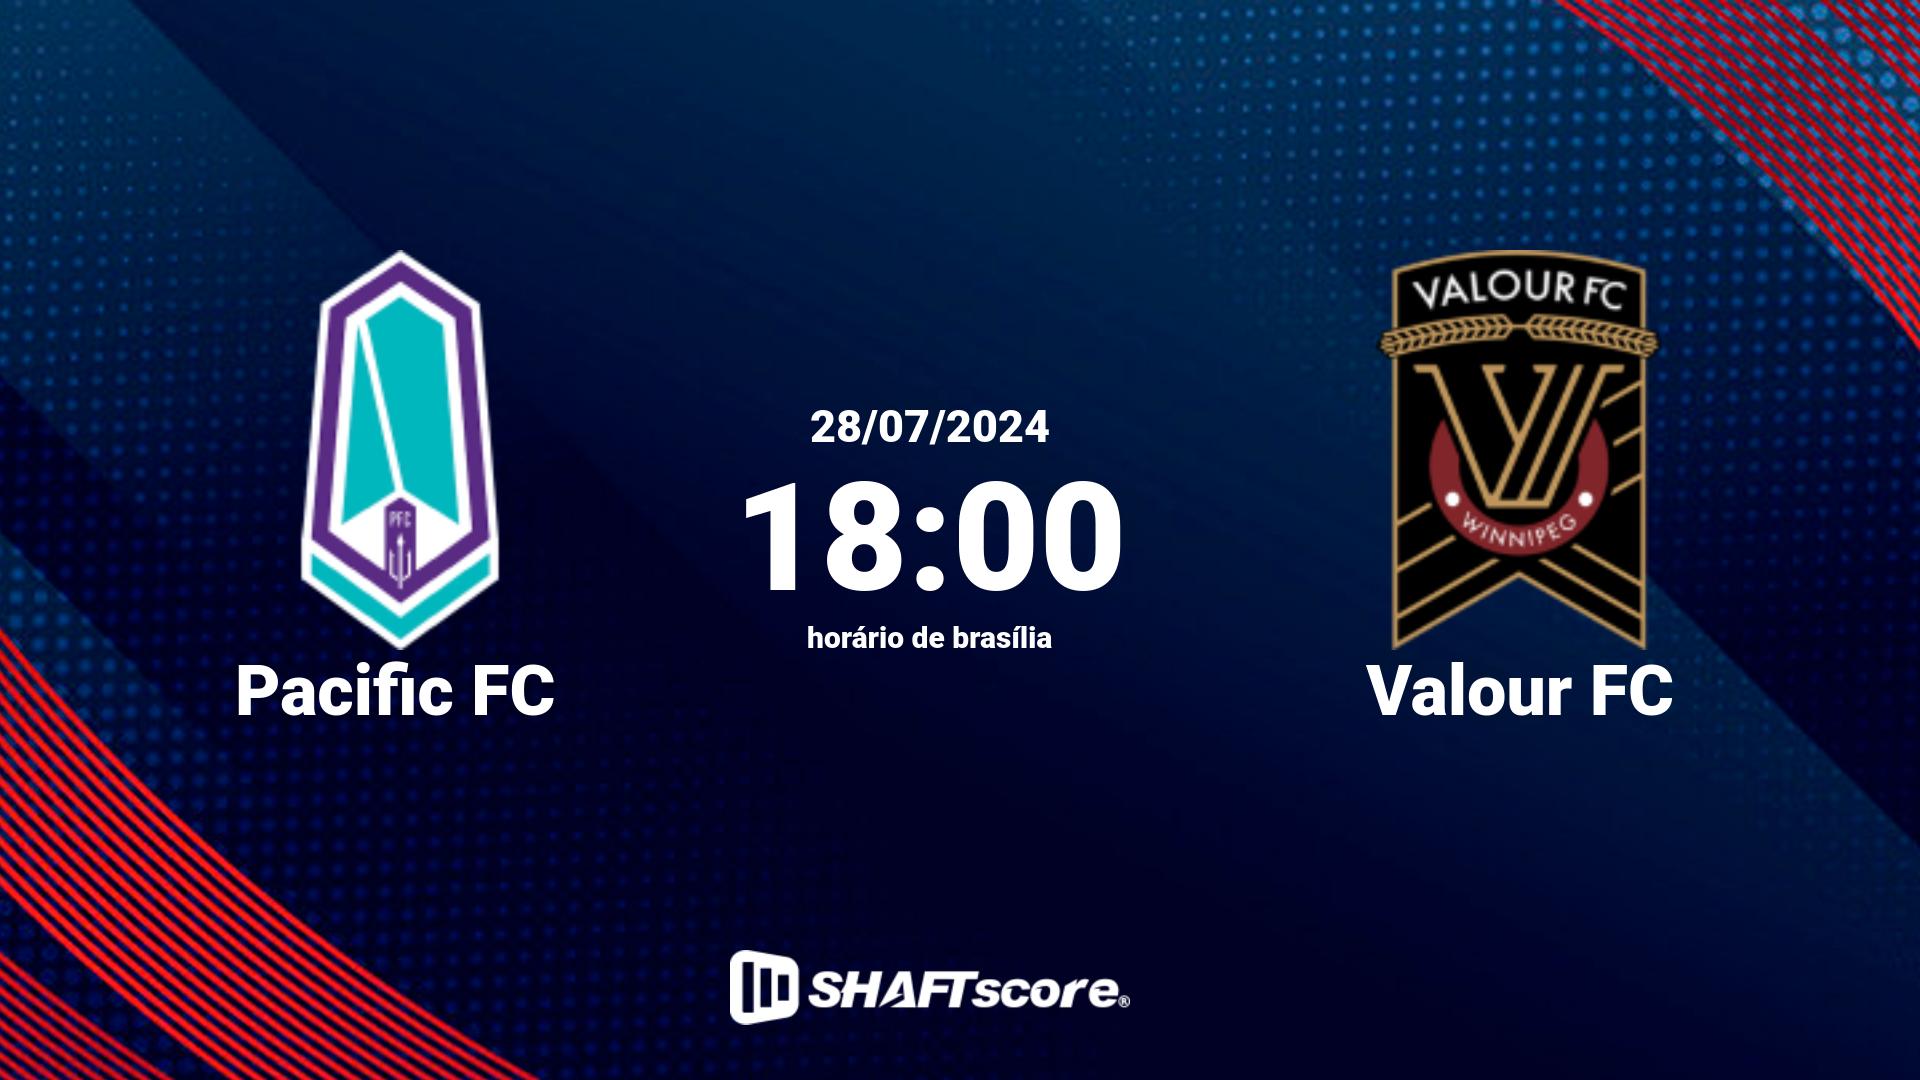 Estatísticas do jogo Pacific FC vs Valour FC 28.07 18:00